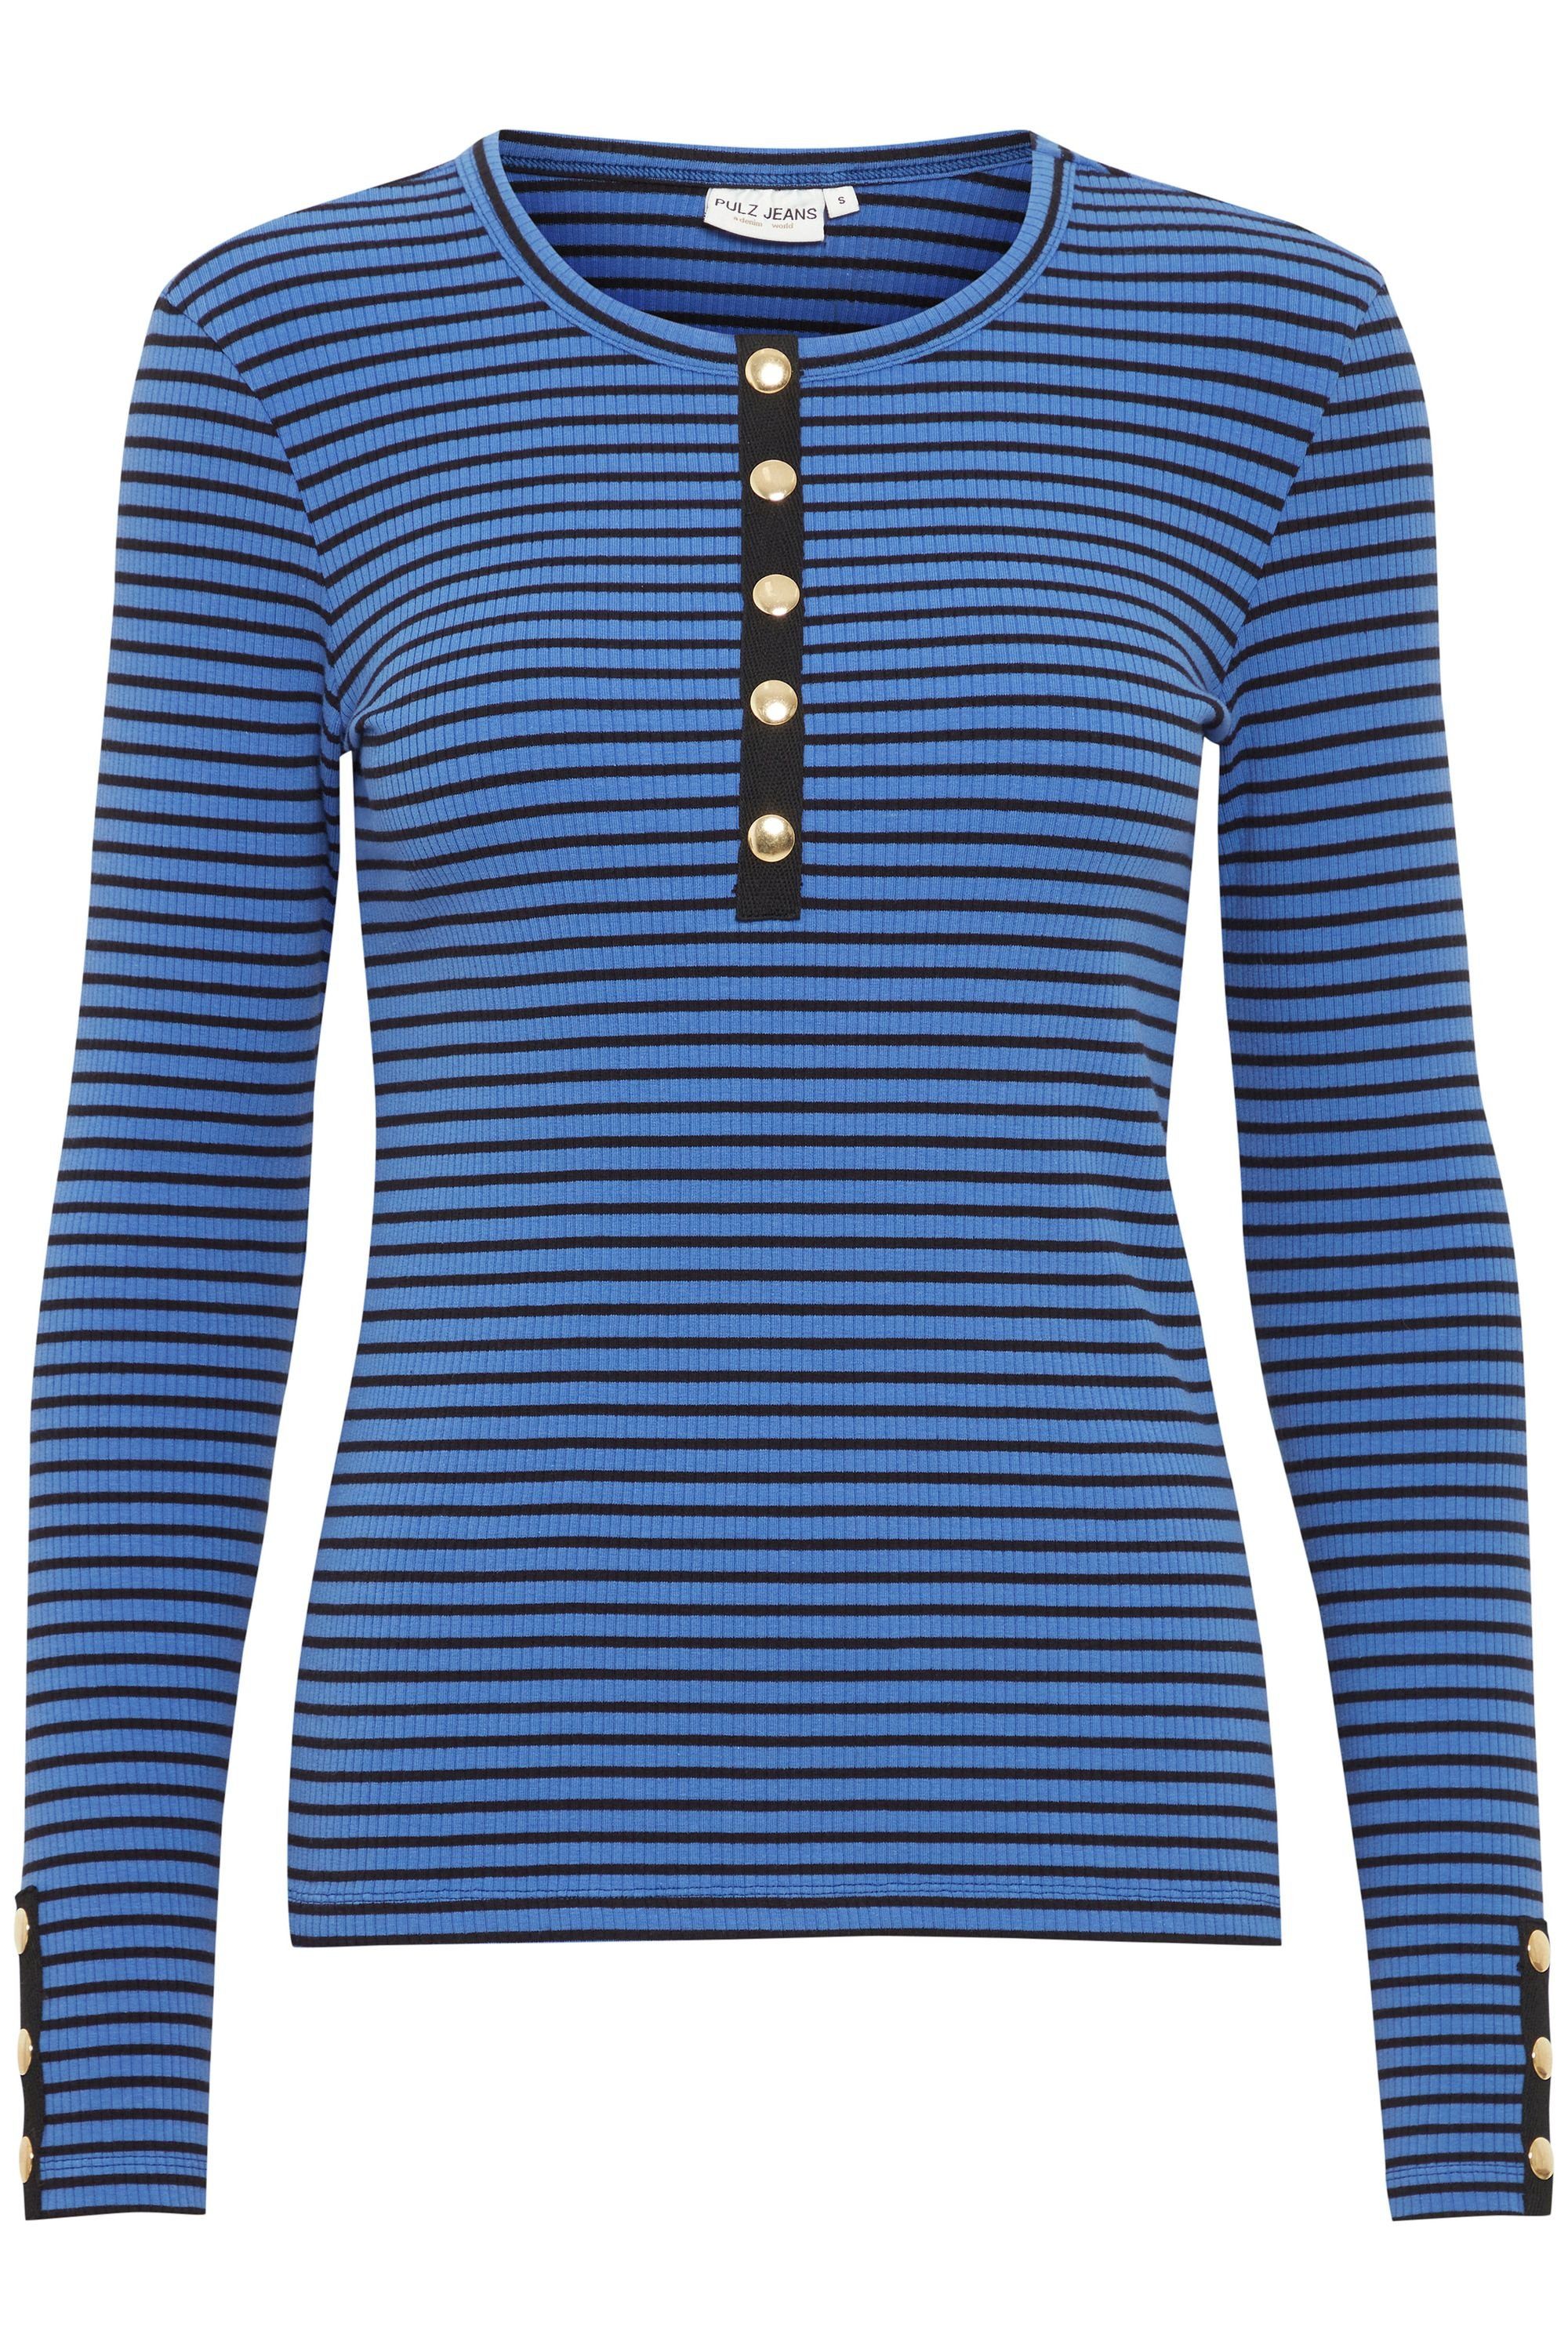 - Sl 50207348 Dazzling Jeans Longsleeve Tshirt PZHAVANA Pulz Long (201964) Stripe Blue